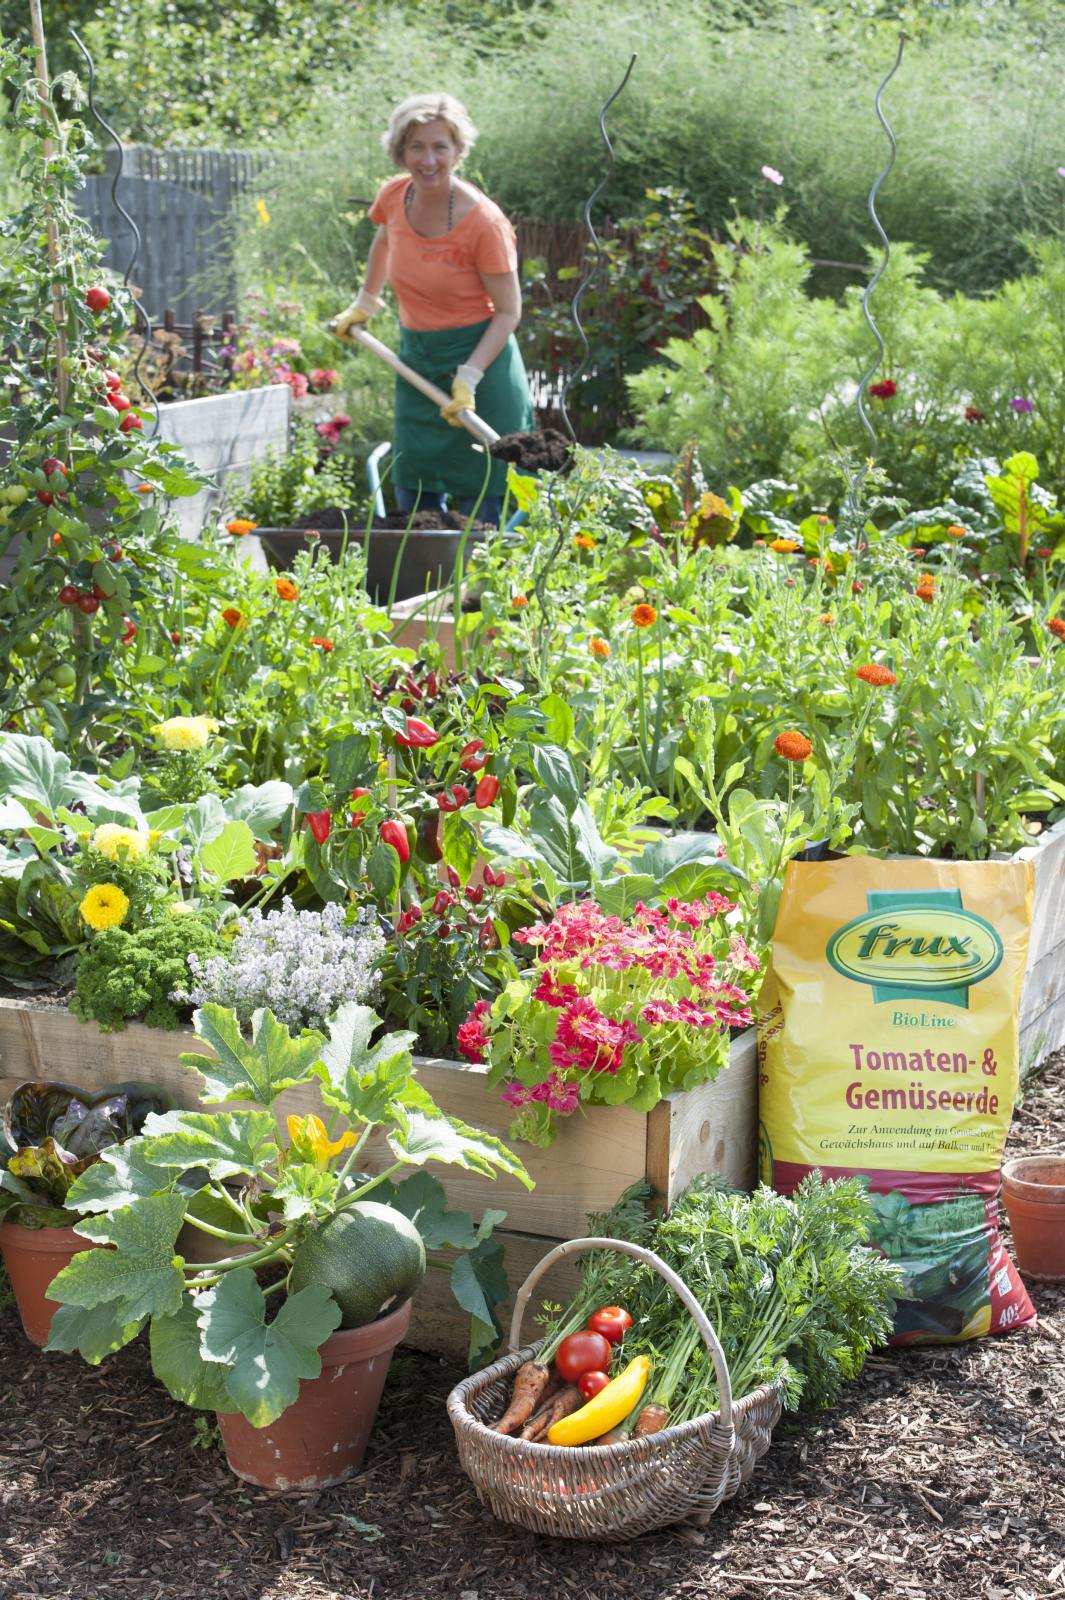 Pflanzen Tipps & Pflanzen Infos @ Pflanzen-Info-Portal.de | (c)frux Tomaten- & Gemseerde eignet sich fr Garten- und Hochbeete